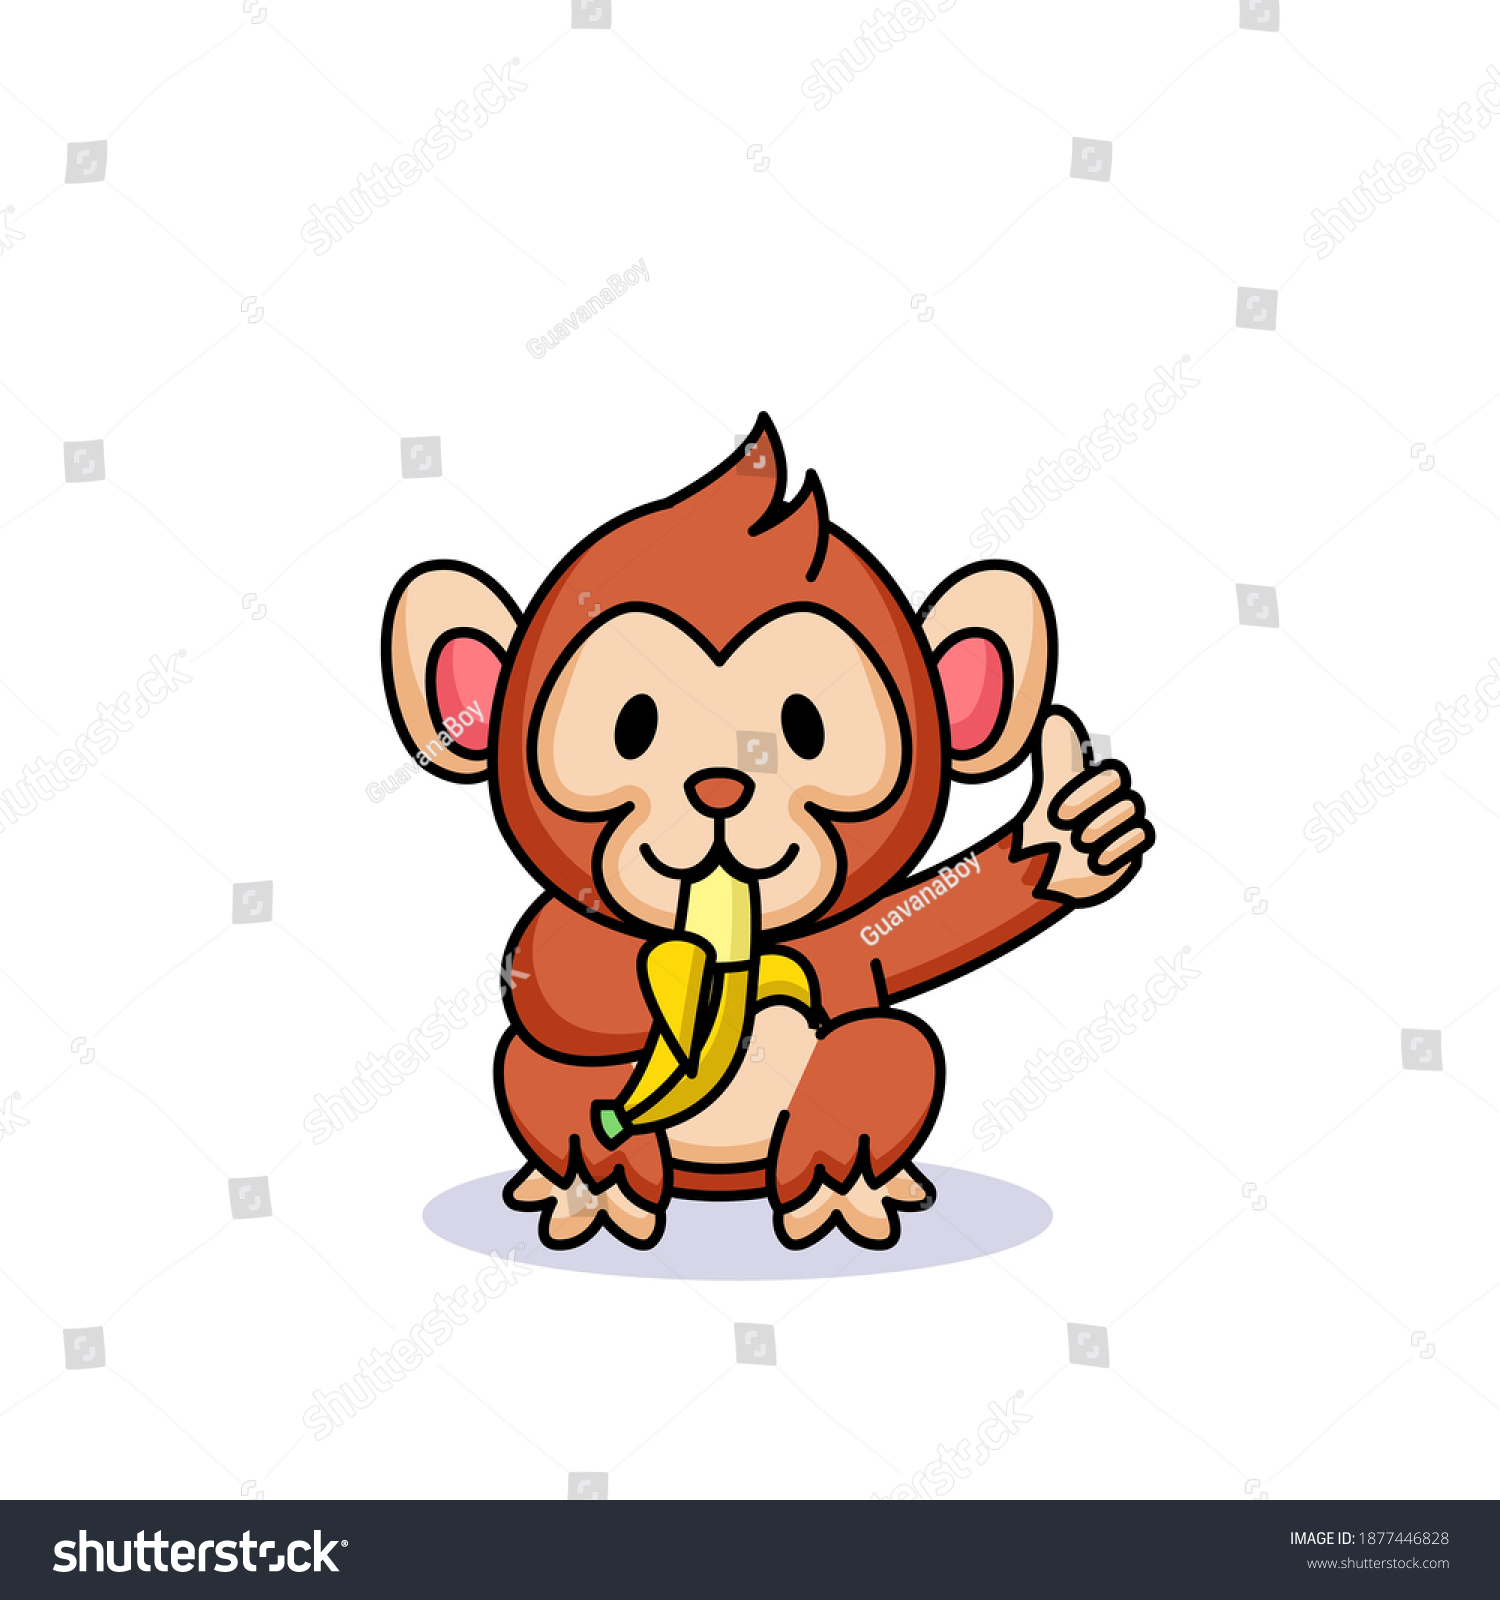 Cute Chibi Kawaii Baby Monkey Banana: Vector Có Sẵn (Miễn Phí Bản Quyền)  1877446828 | Shutterstock